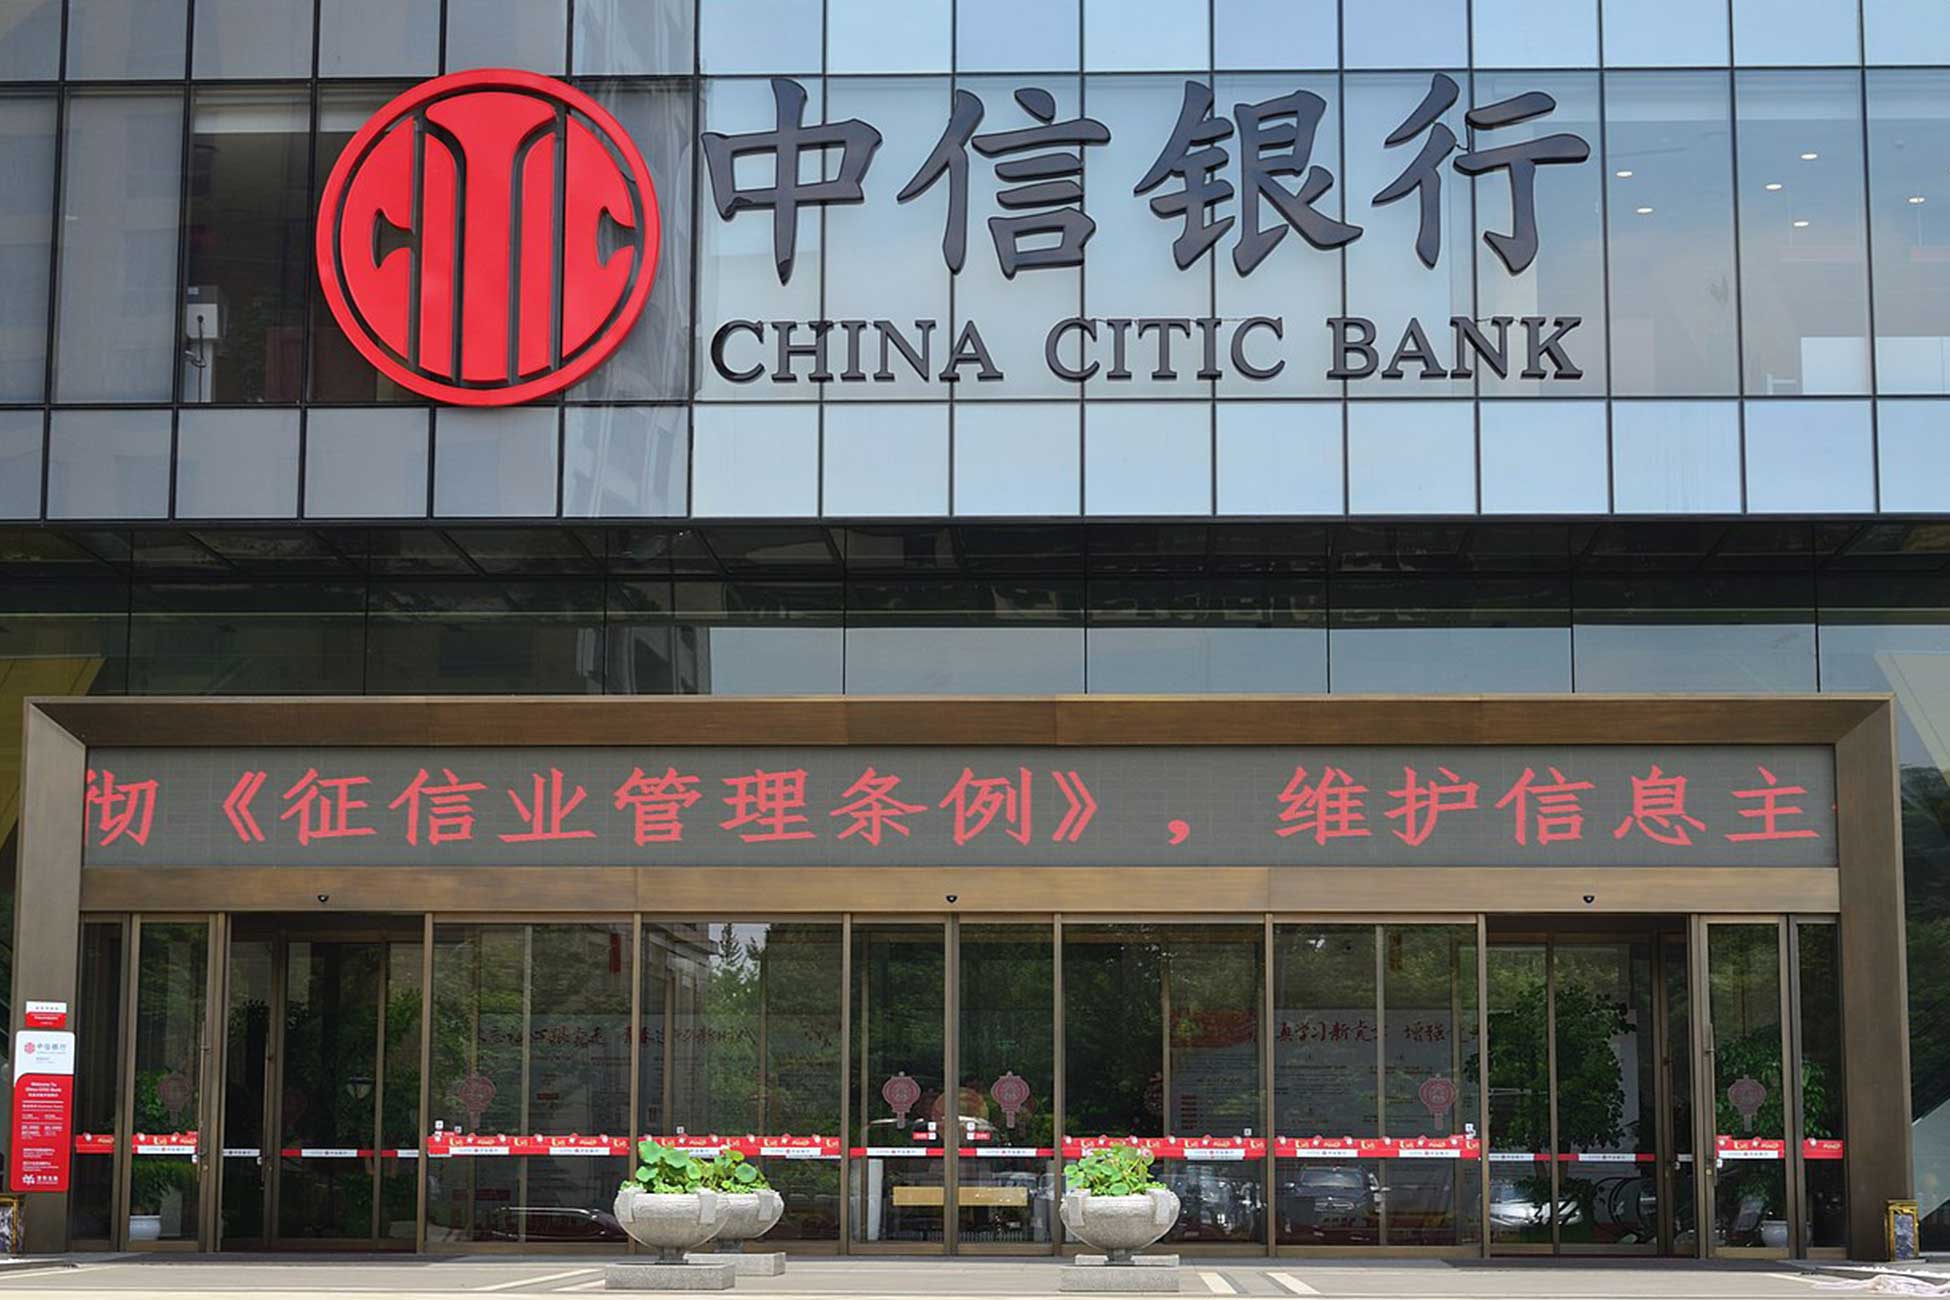 Open a bank account in Hangzhou